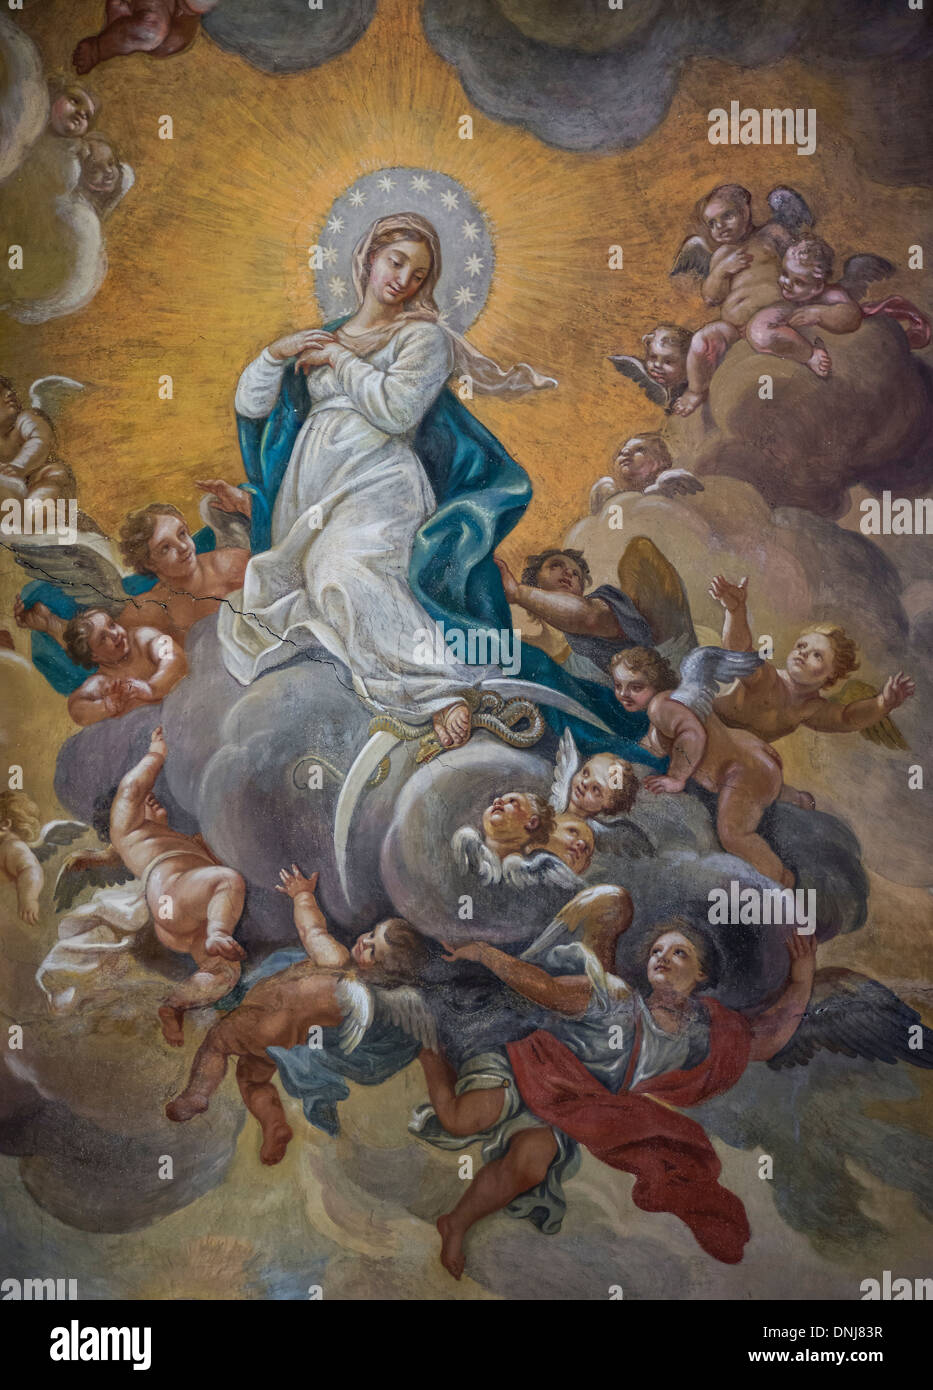 Cieling fresco de l'Assomption, Santa Maria Maddalena, Rome, Italie Banque D'Images